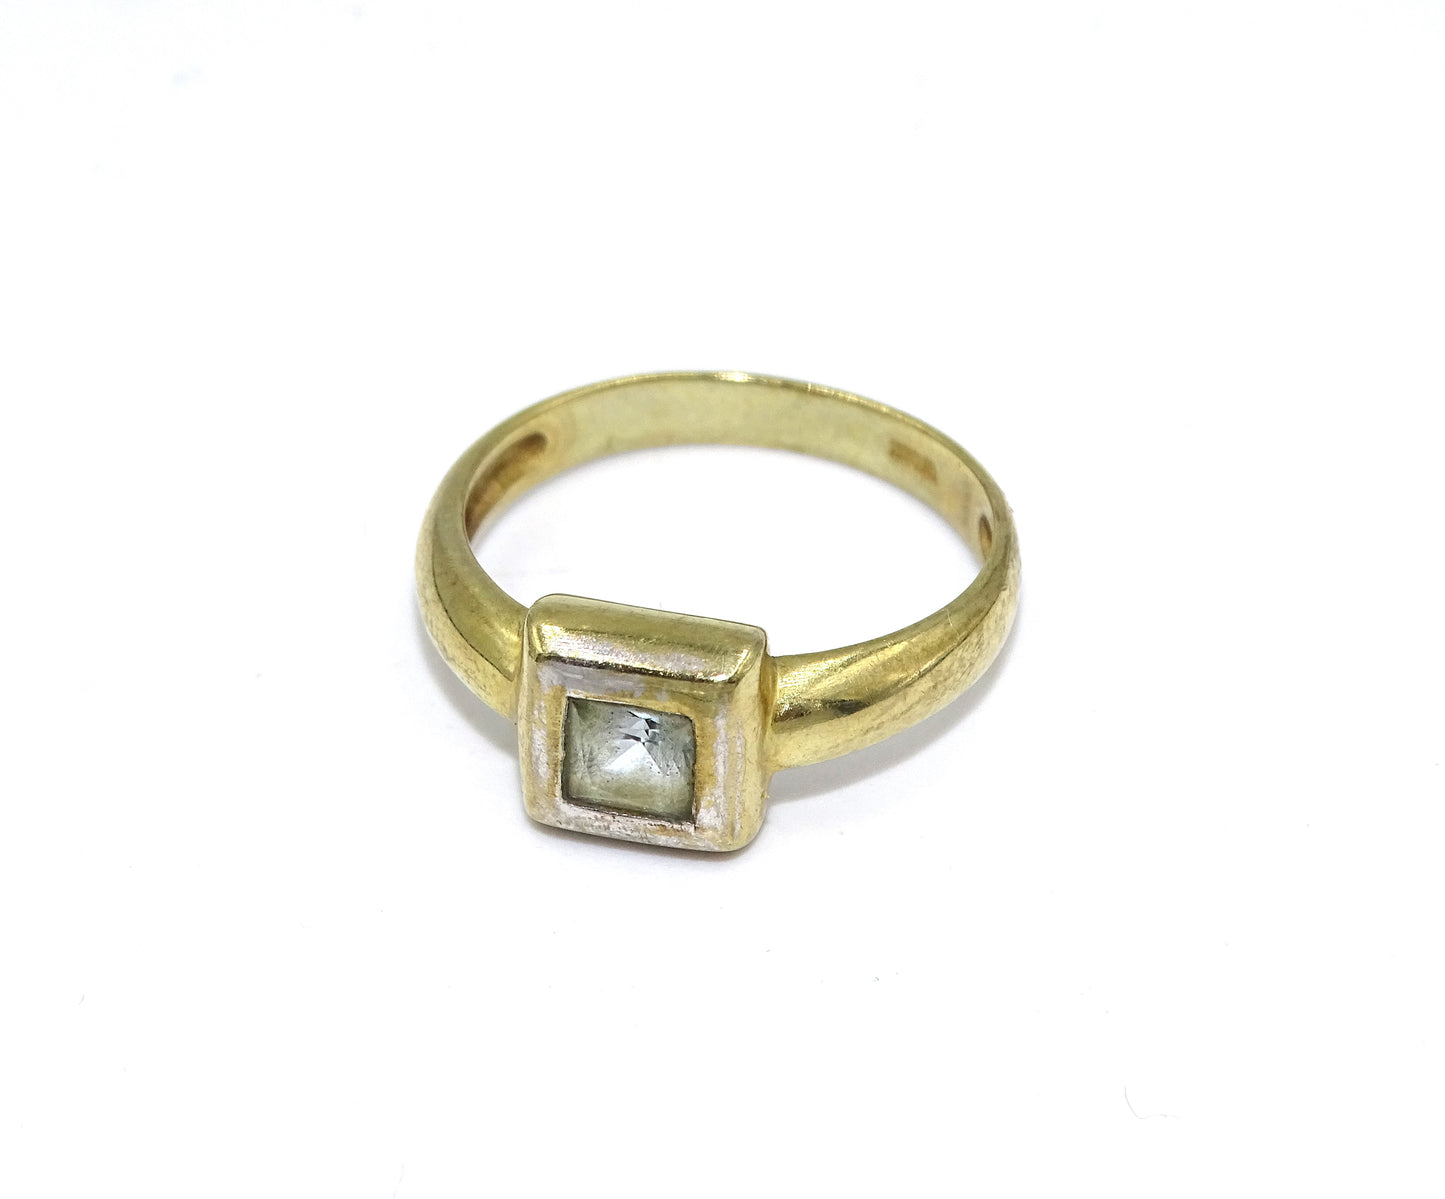 Vintage Ring mit 333er Gold und hellblauen Steinen, Größe 55